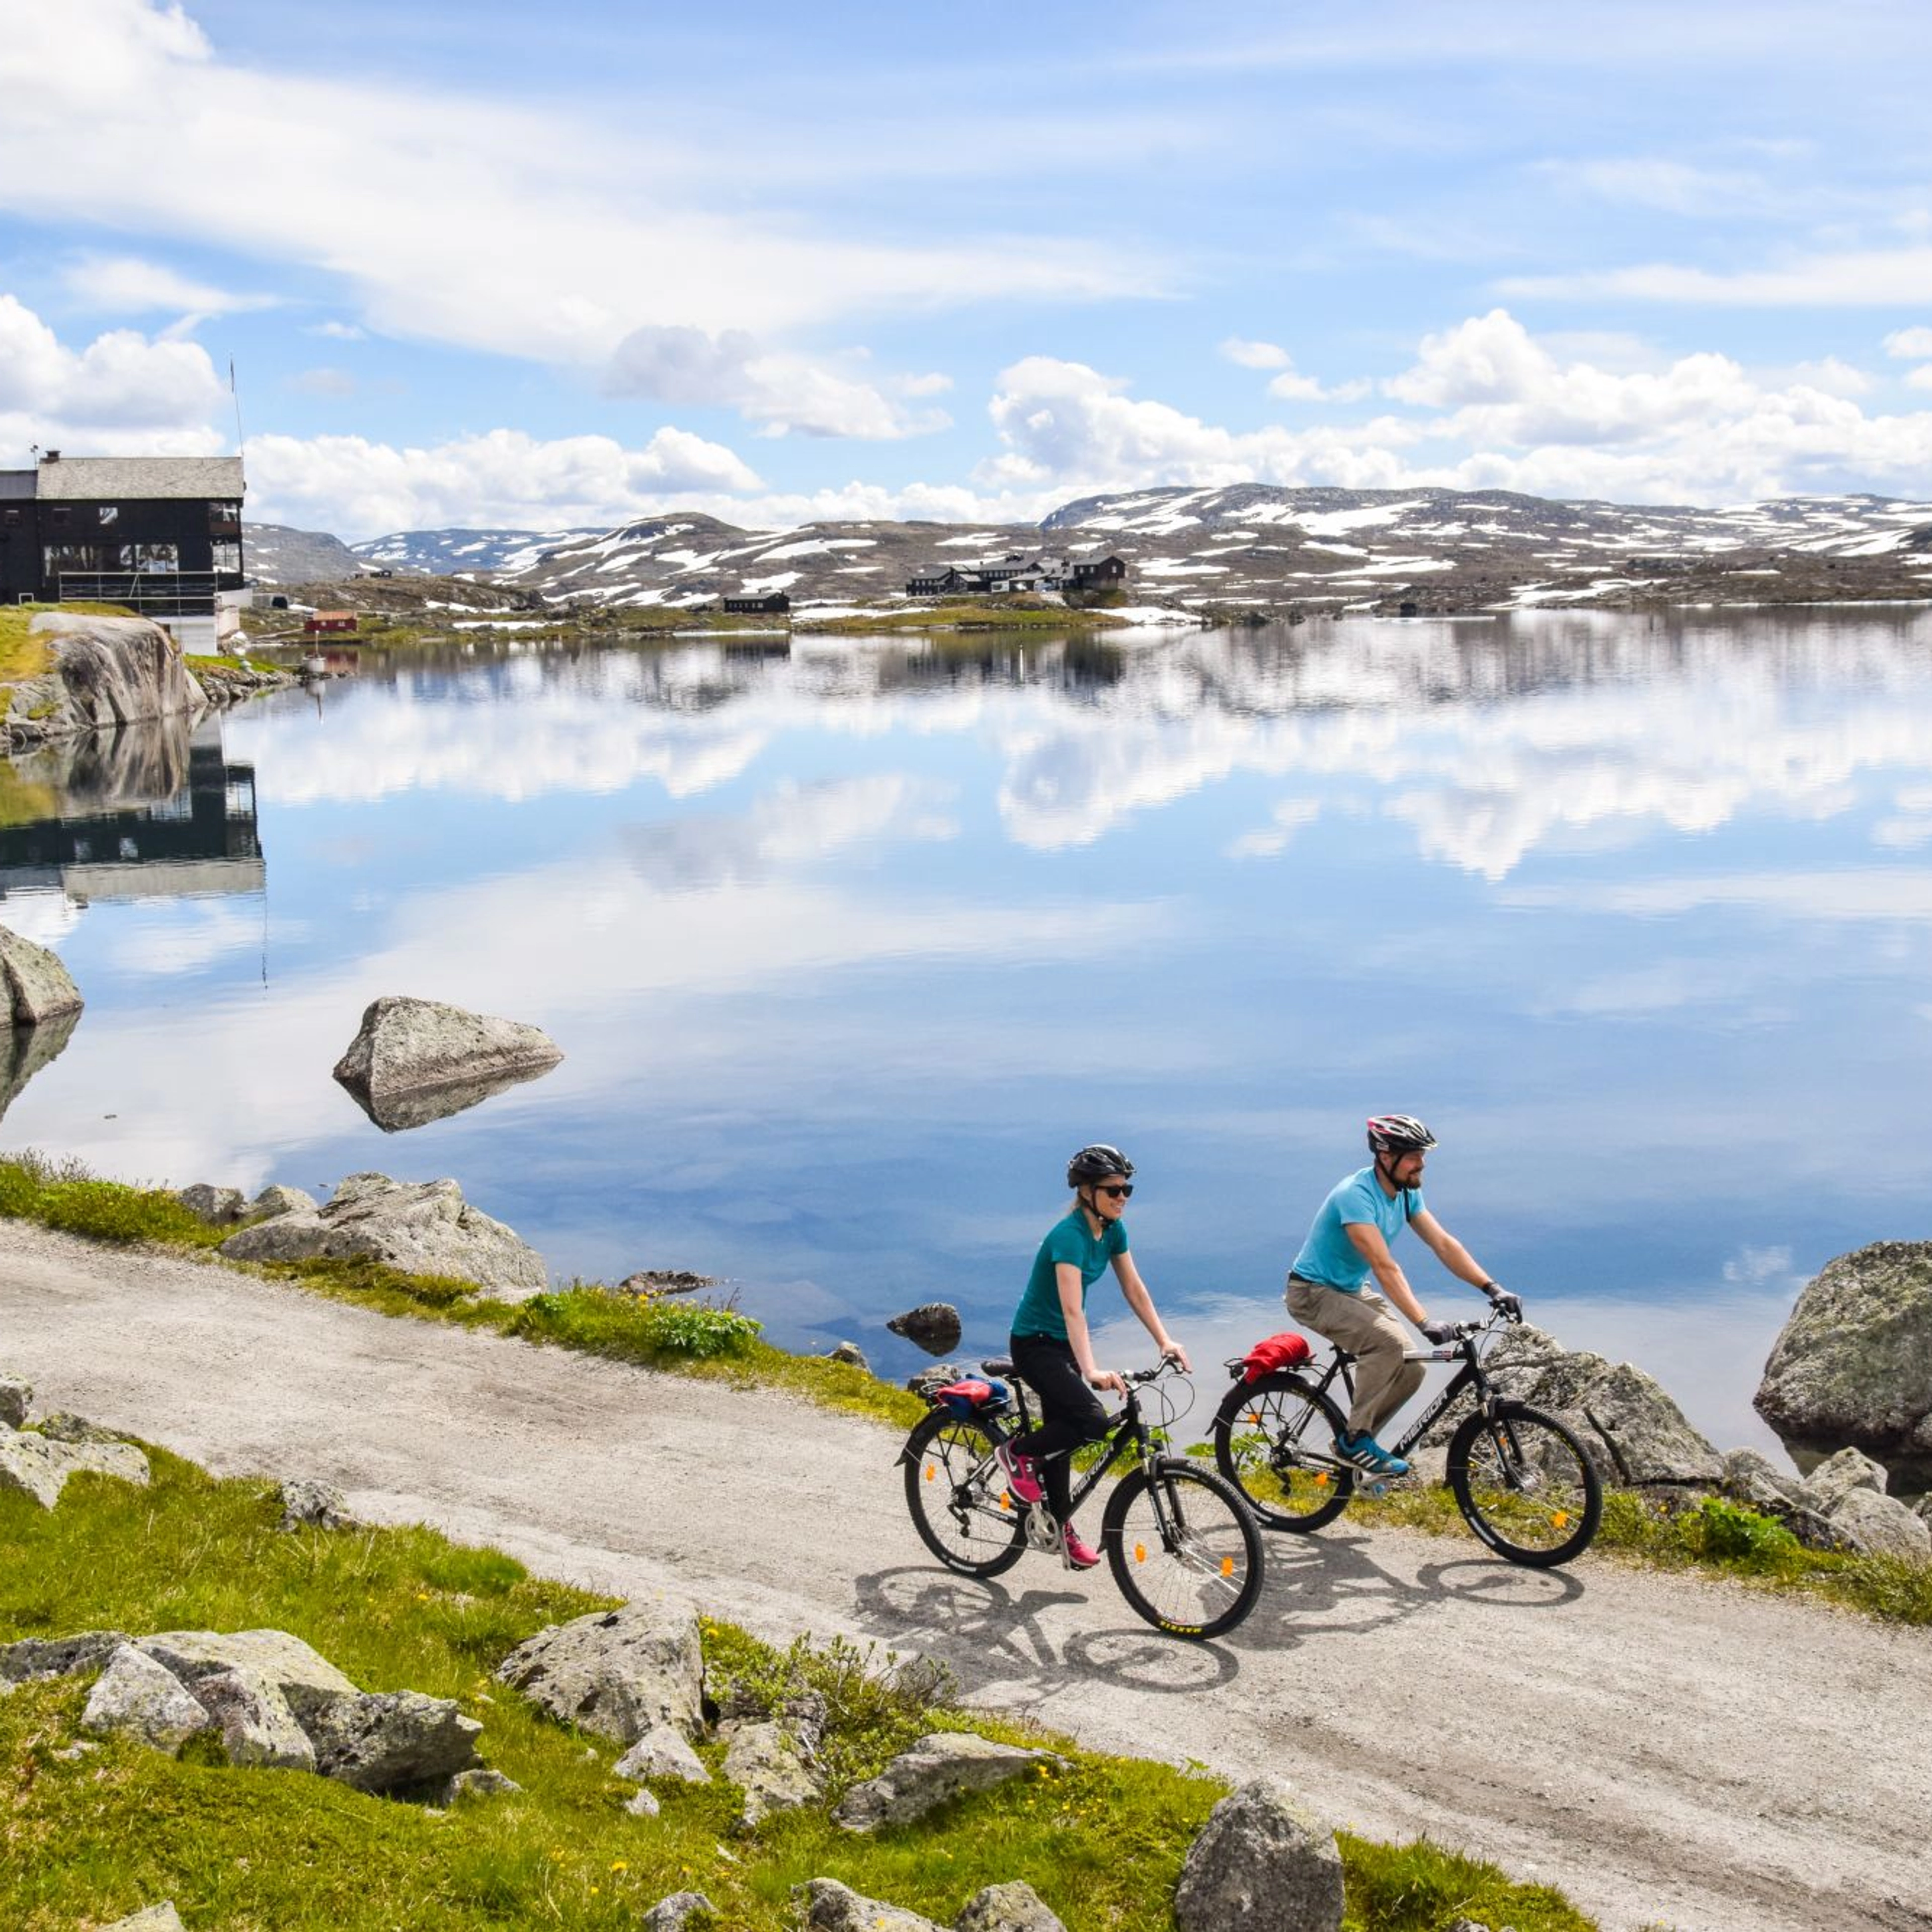 Biking trip from Finse - Rallarvegen, Norway